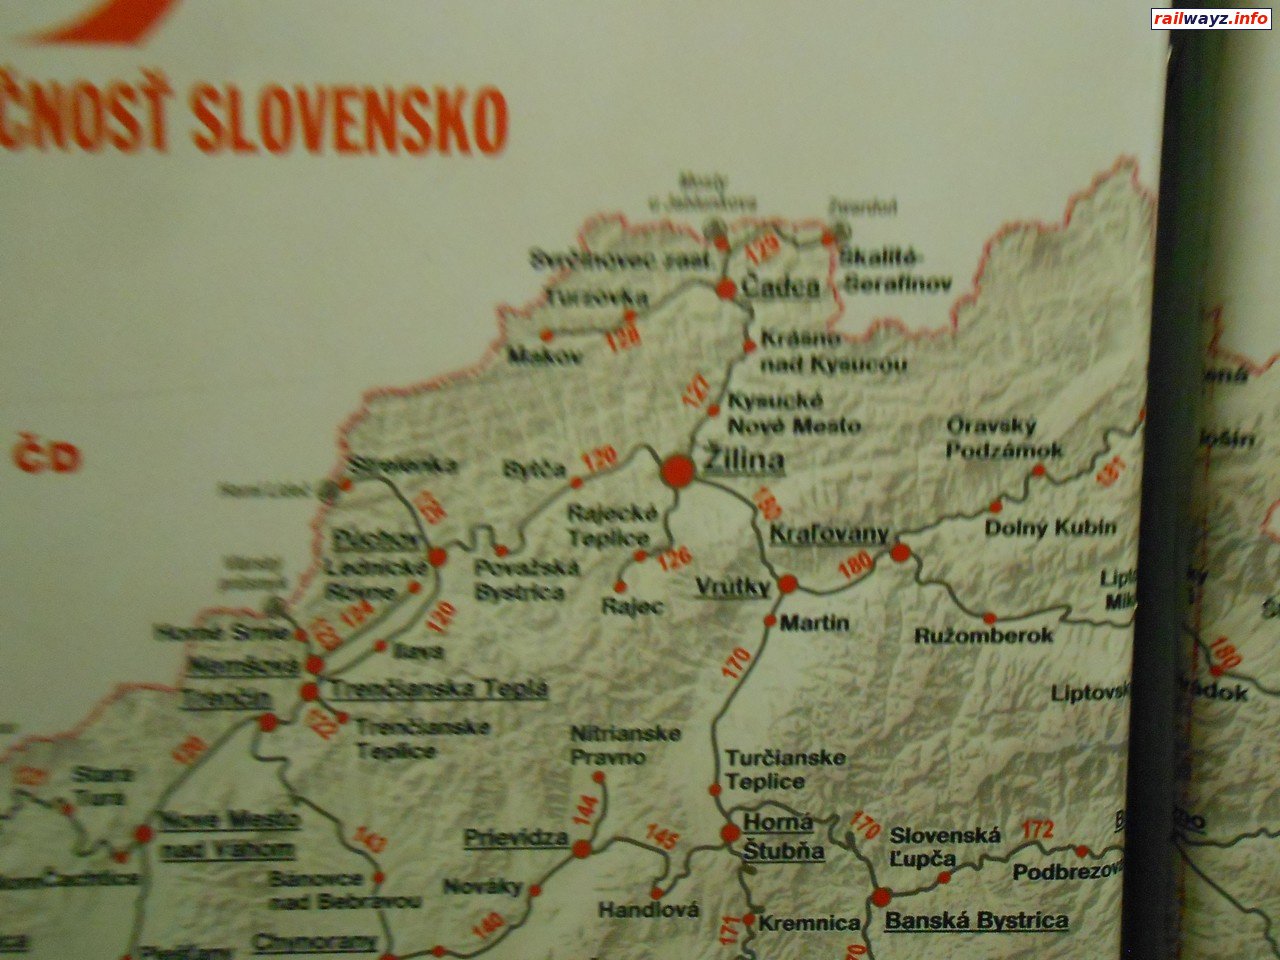 Фрагмент схемы железных дорог Словакии в вагоне поезда Прага - Кошице